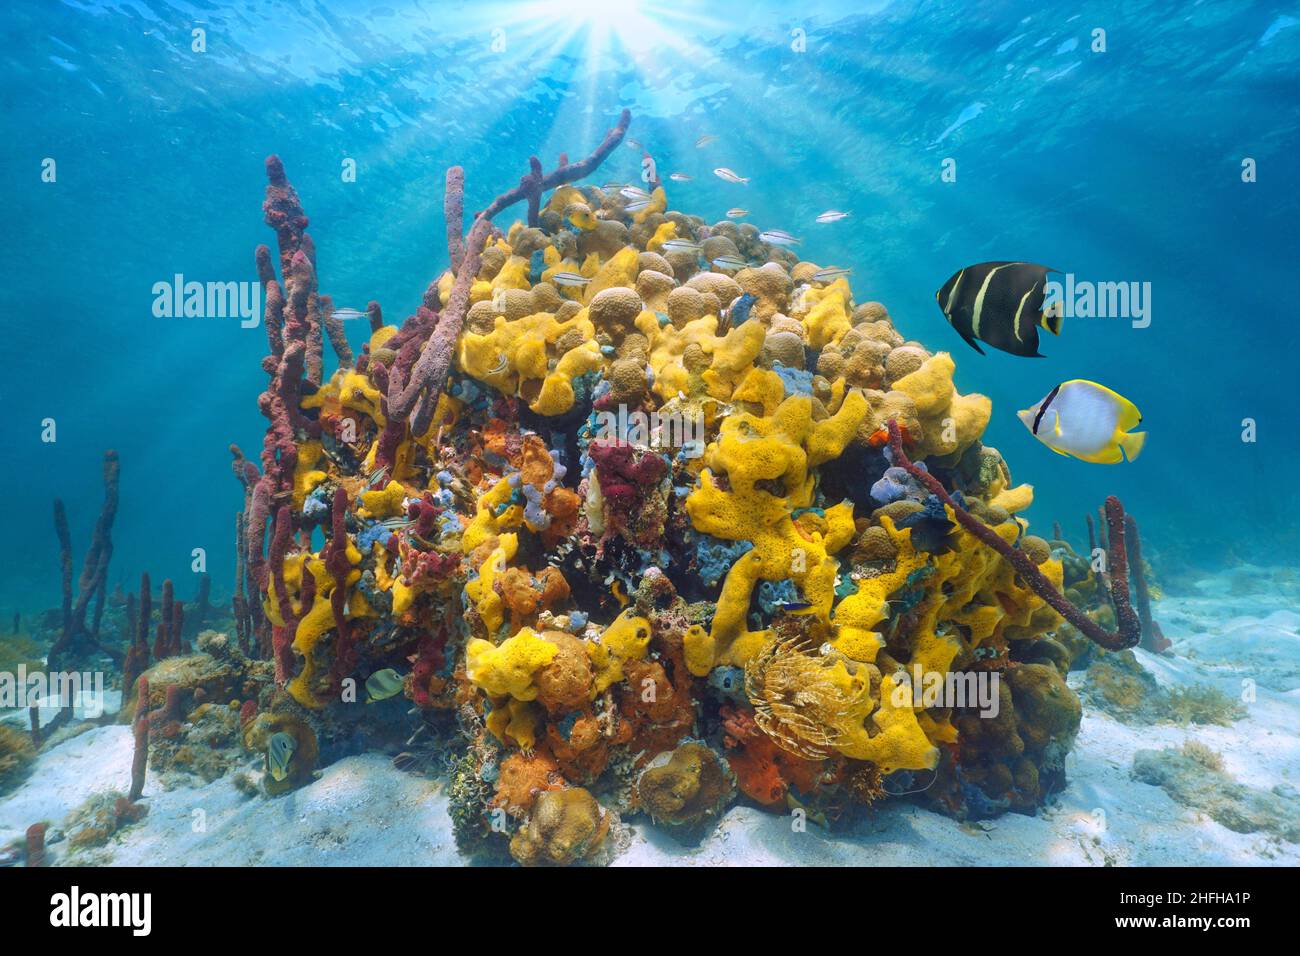 Vie marine colorée dans la mer, paysage marin sous-marin, corail avec éponges de mer et poissons tropicaux, Caraïbes, Amérique centrale, Panama Banque D'Images